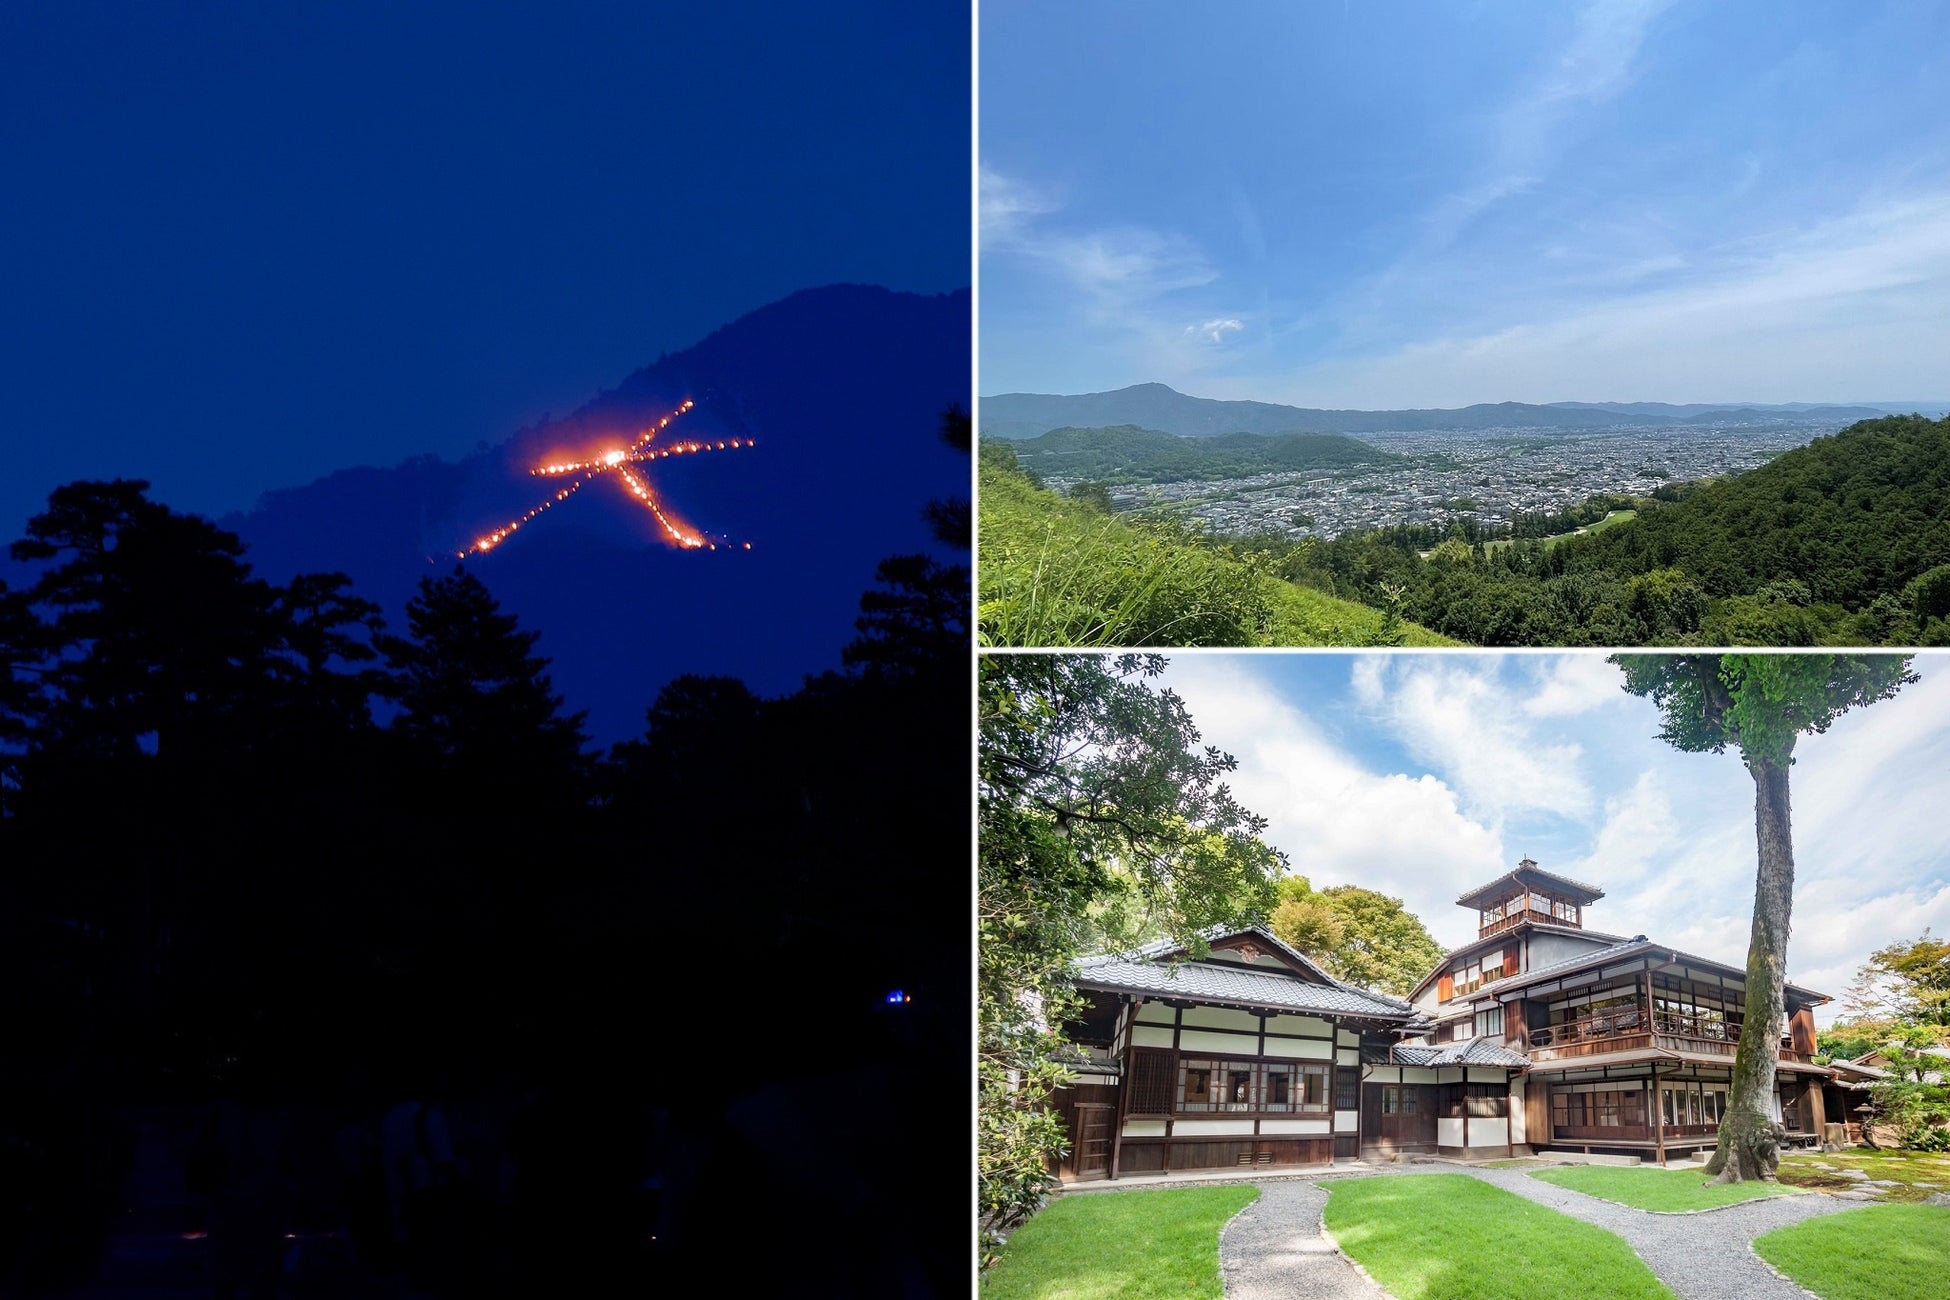 京都市観光協会 × HOTEL THE MITSUI KYOTO「京都 五山送り火」特別ツアーを提供